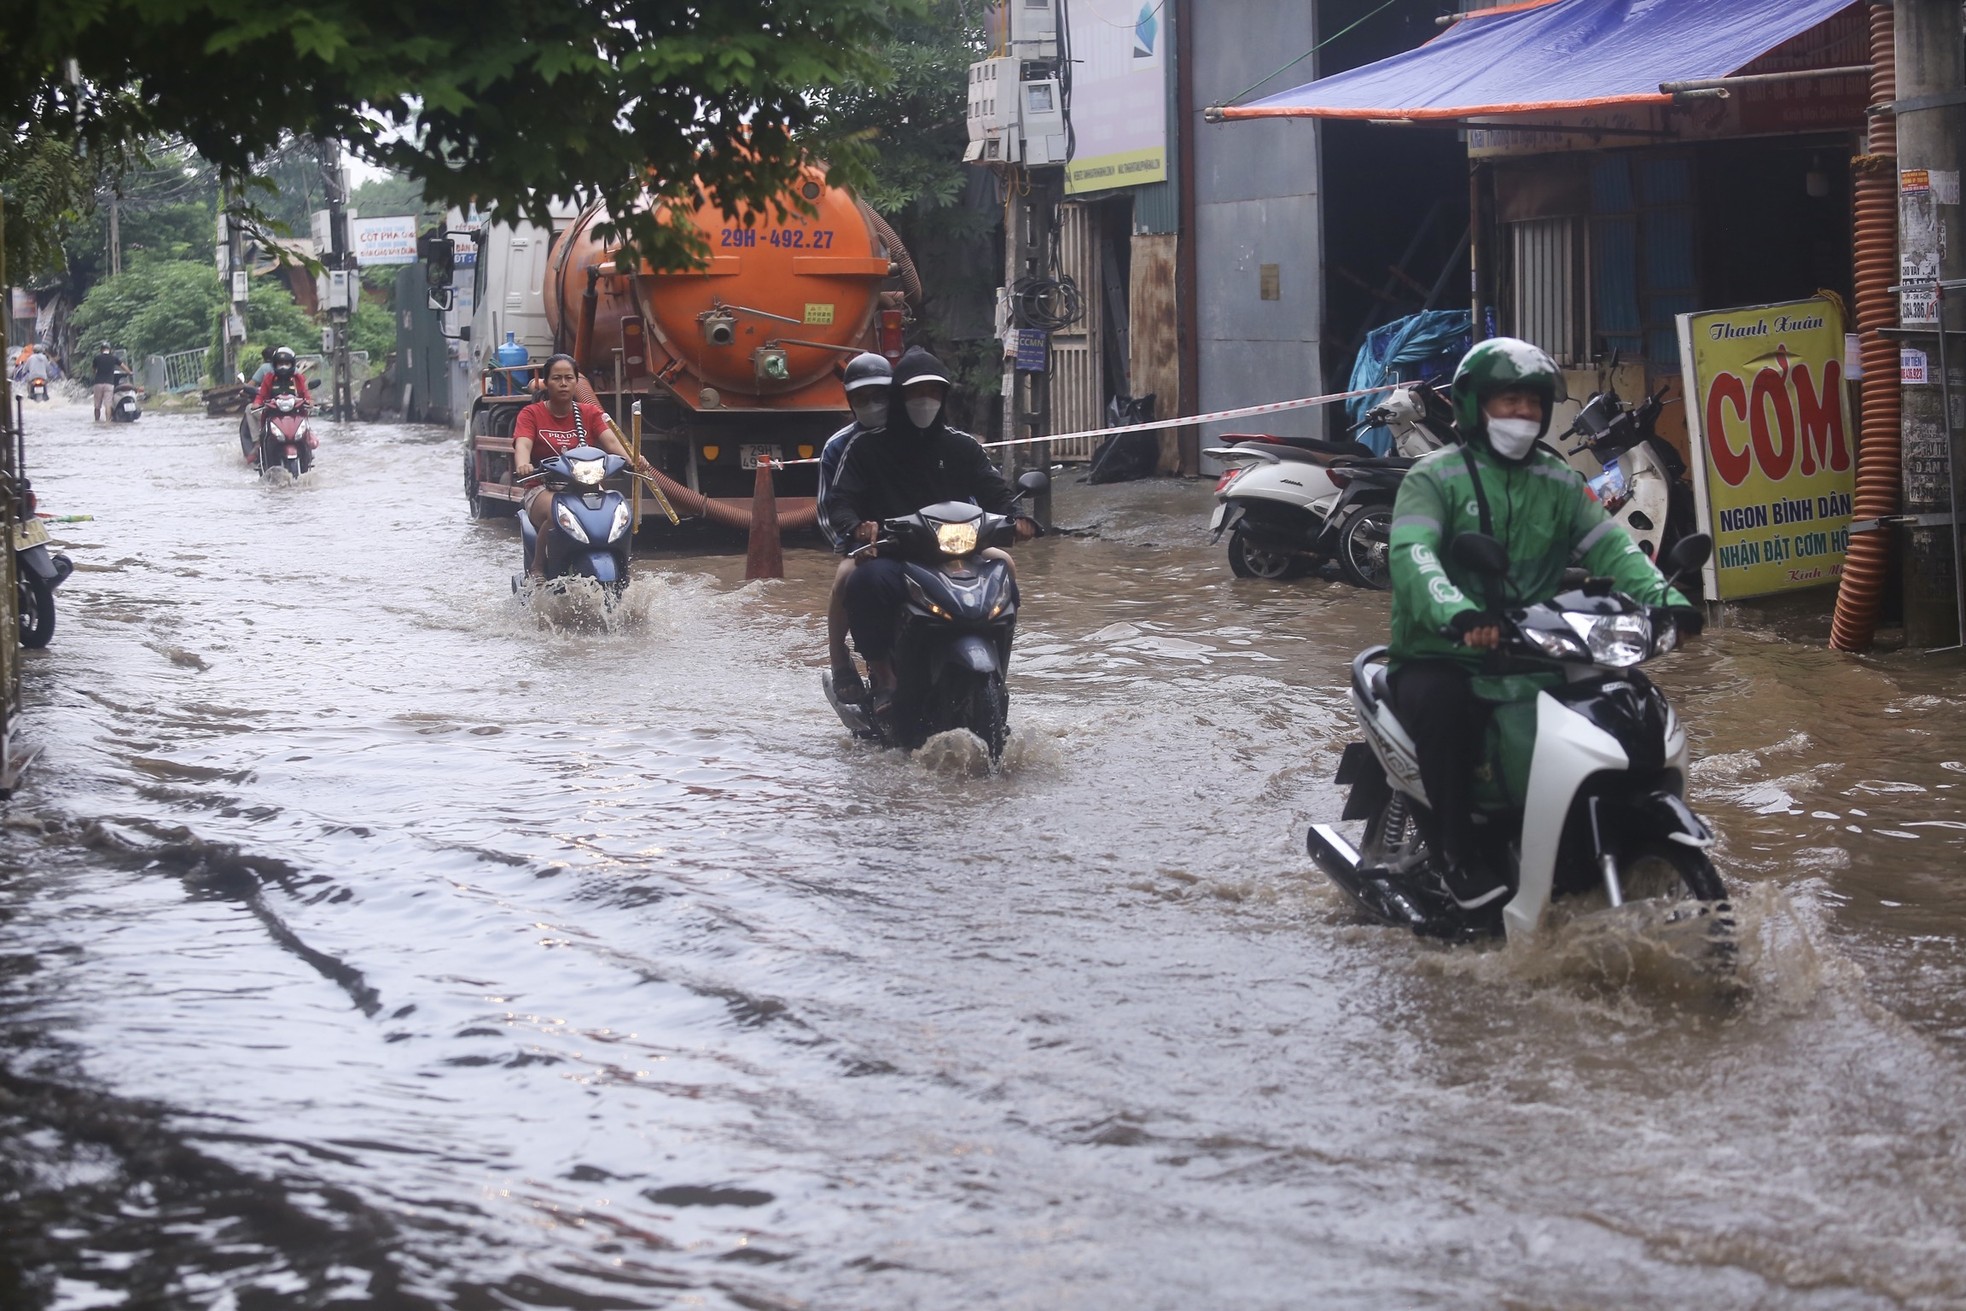 Một con phố ở Thủ đô vẫn chìm trong 'biển nước' sau một ngày mưa lớn - Ảnh 15.